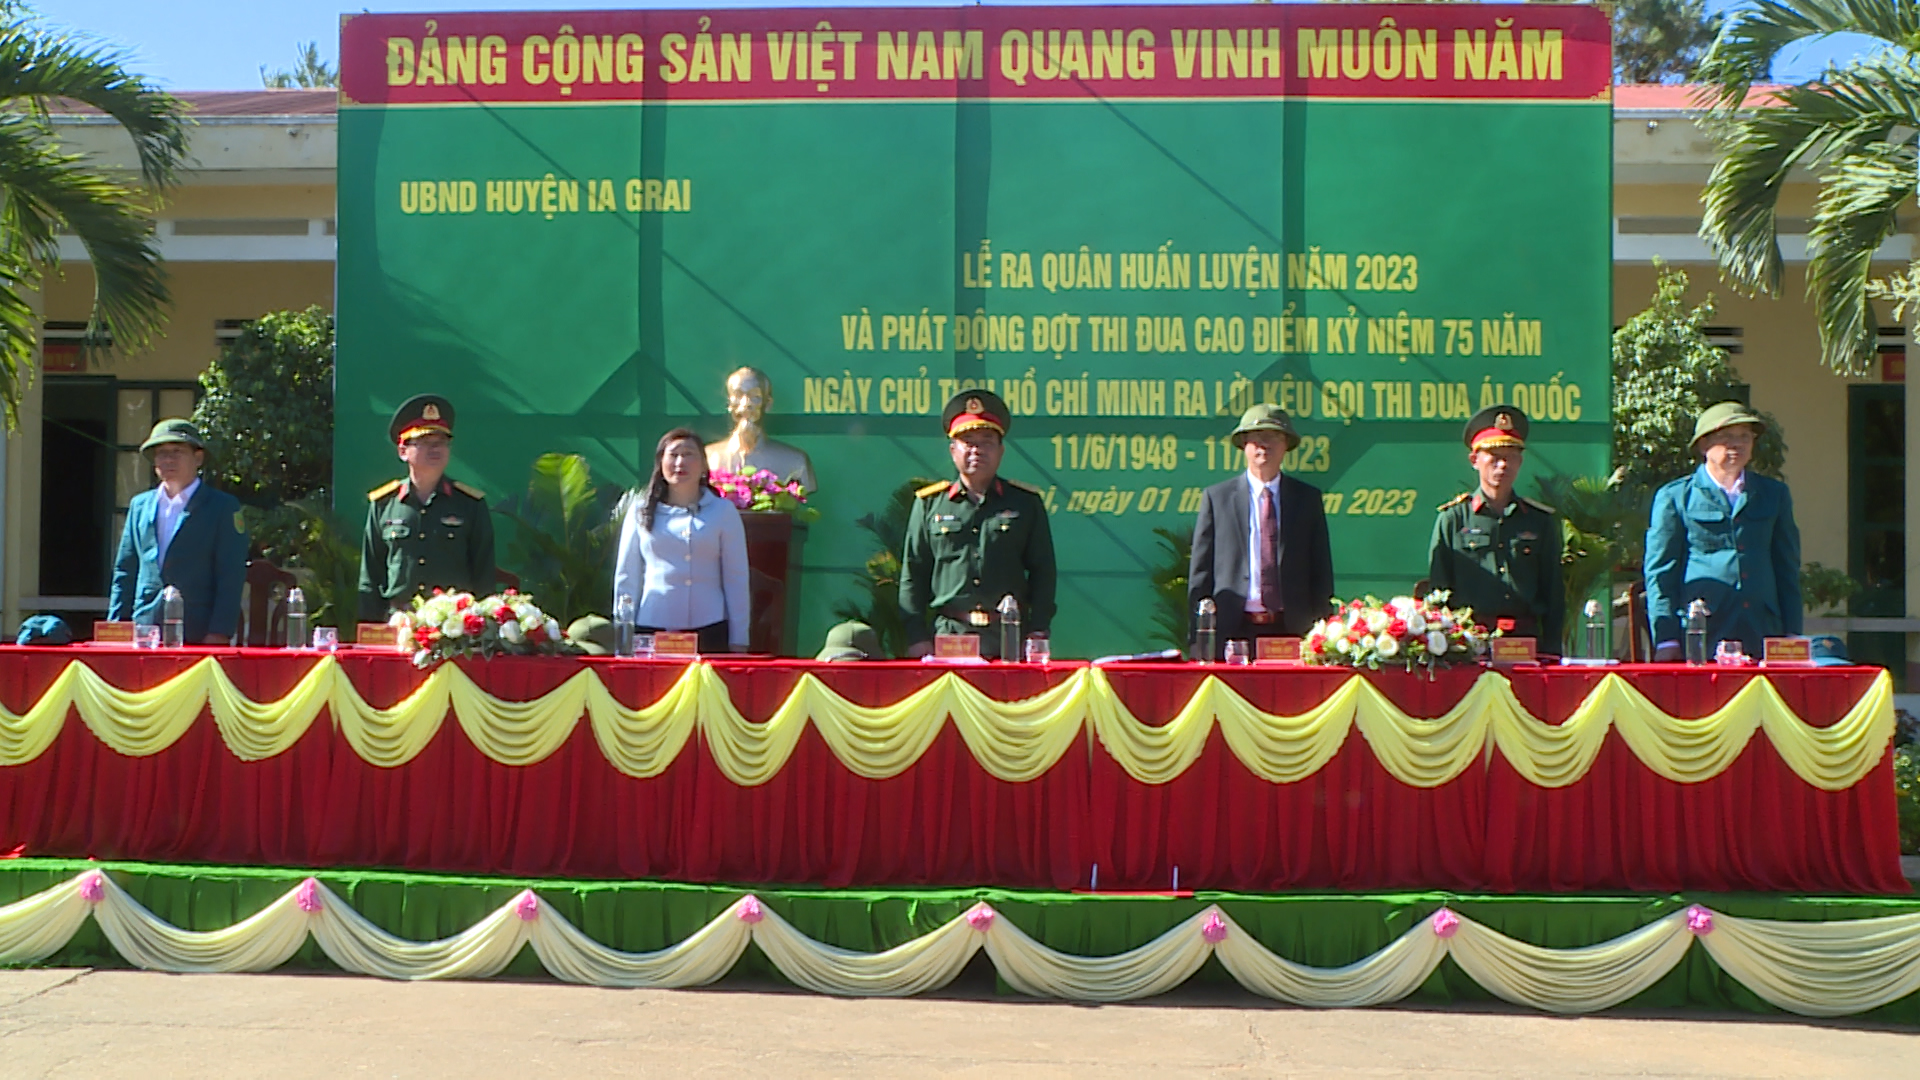 Article Ra quân huấn luyện năm 2023 và phát động thi đua cao điểm kỷ niệm 75 năm ngày Chủ tịch Hồ Chí Minh ra lời kêu gọi thi đua ái Quốc  (11/6/1948 – 11/6/2023)